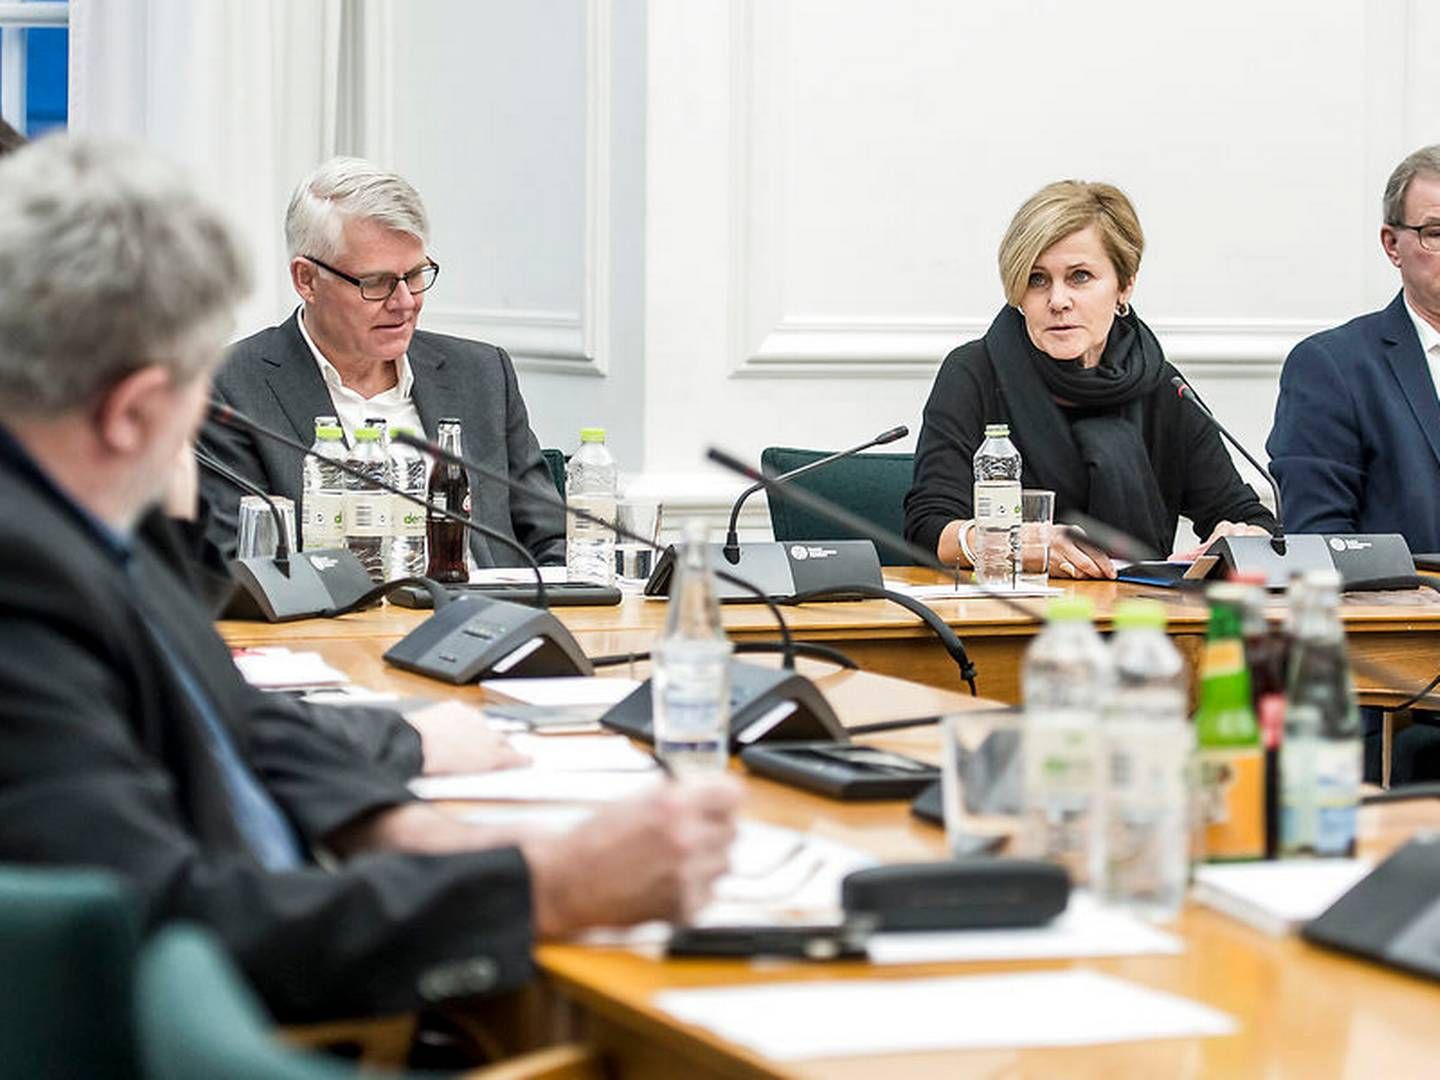 Kulturminister Mette Bock (LA) kommer til at lede medieforhandlingerne, når der i Finansministeriet er blevet enighed om, hvor meget der skal spares i DR. | Foto: Scanpix Ritzau/Mads Claus Rasmussen